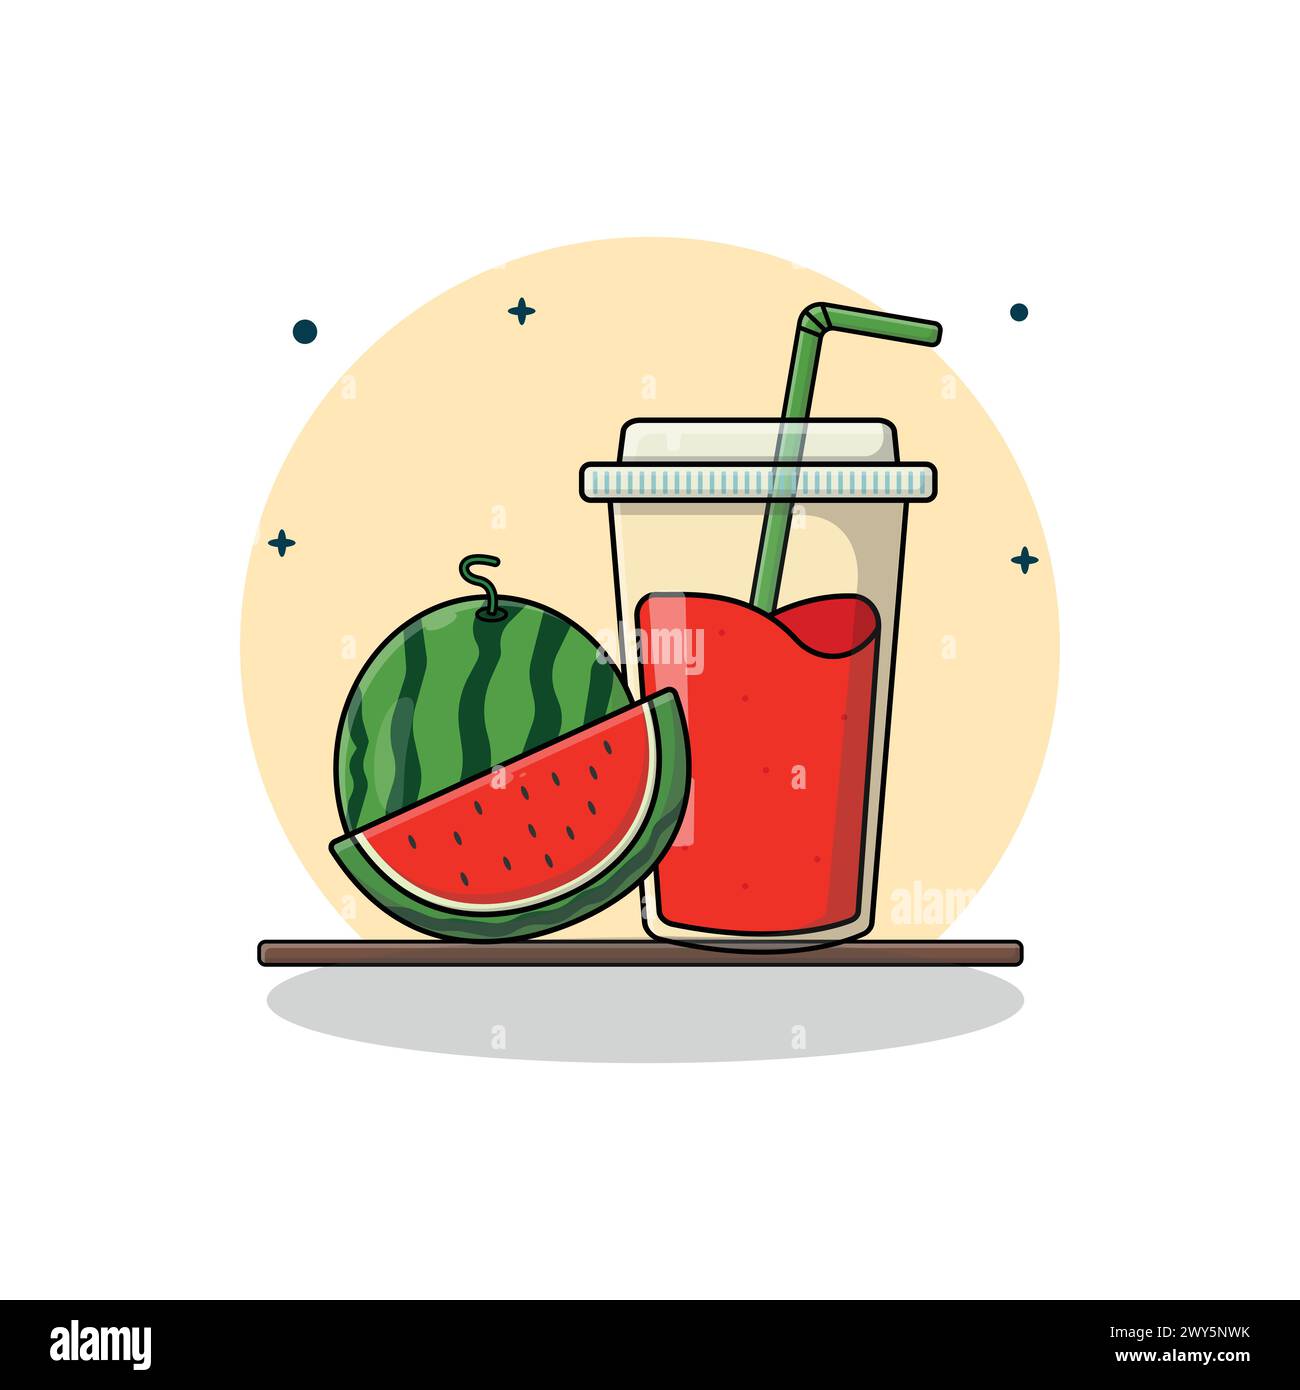 Wassermelonensaft Vektor-Illustration. Konzept für frisches Fruchtsaft Stock Vektor